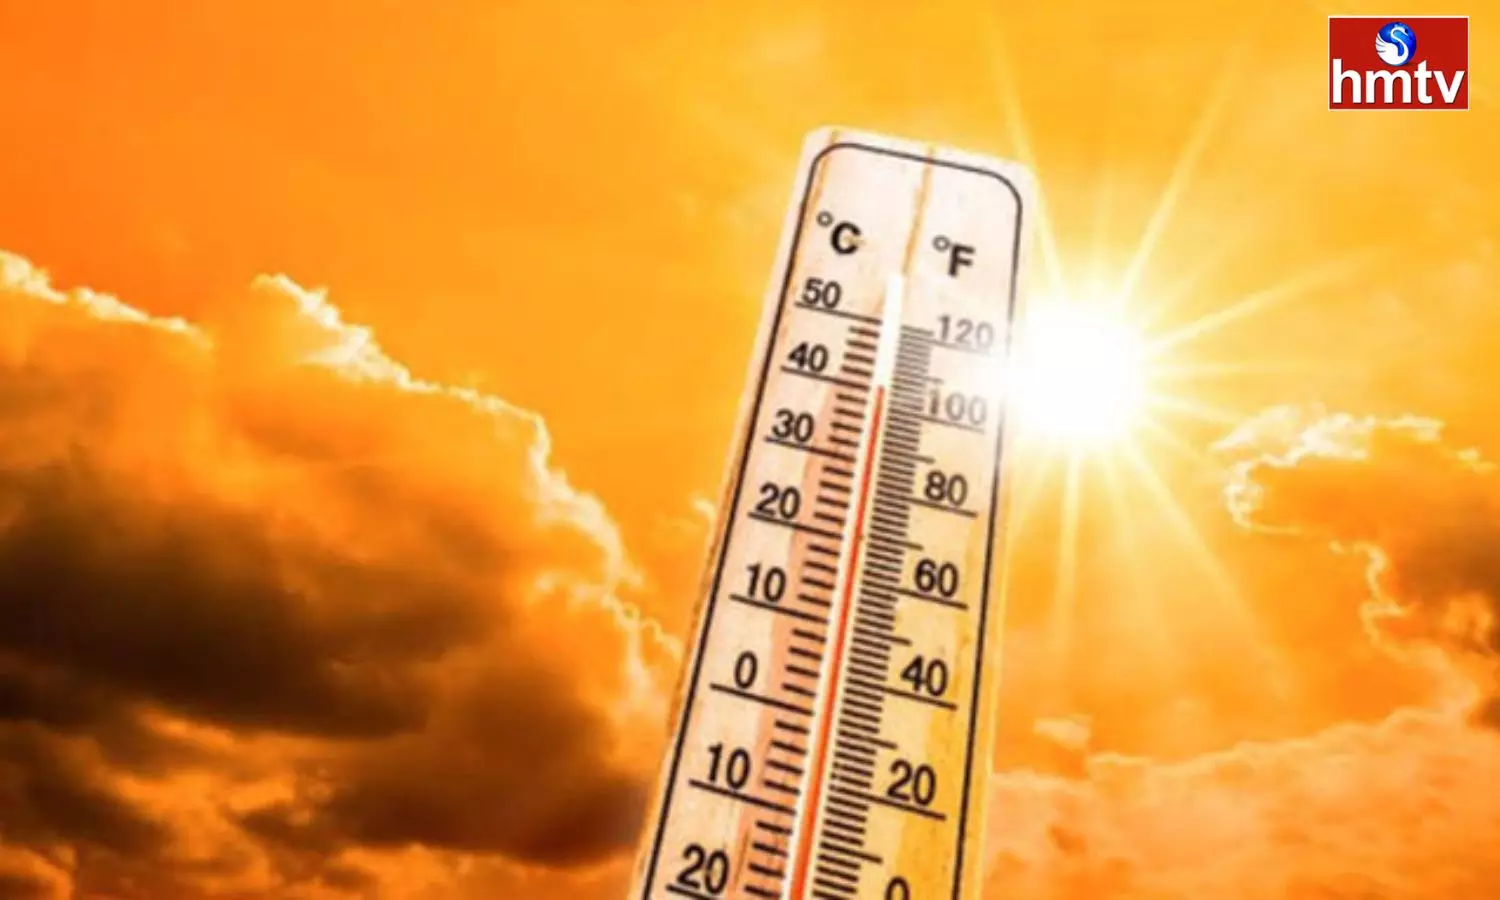 Increased temperatures in Telangana